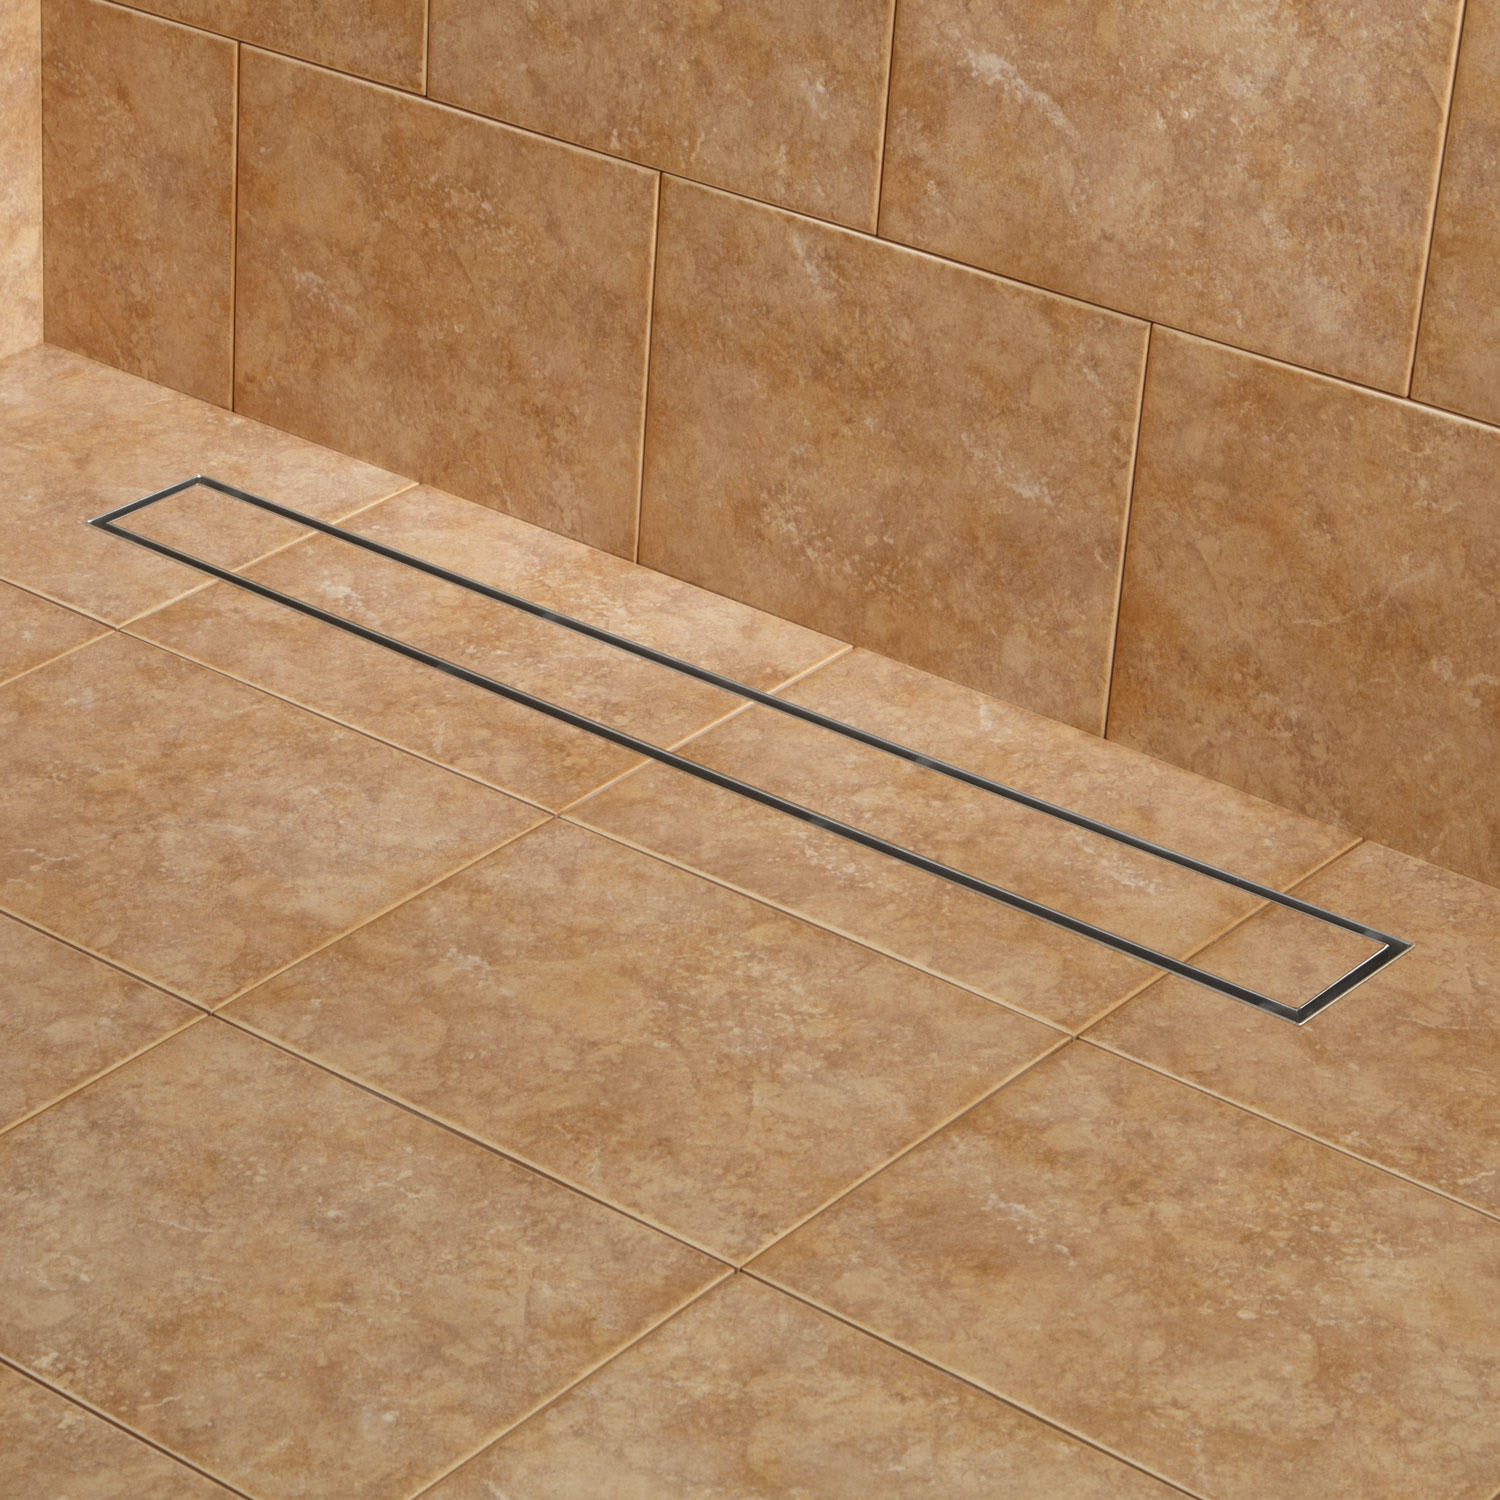 LUXE Linear Shower Drain - Tile Insert